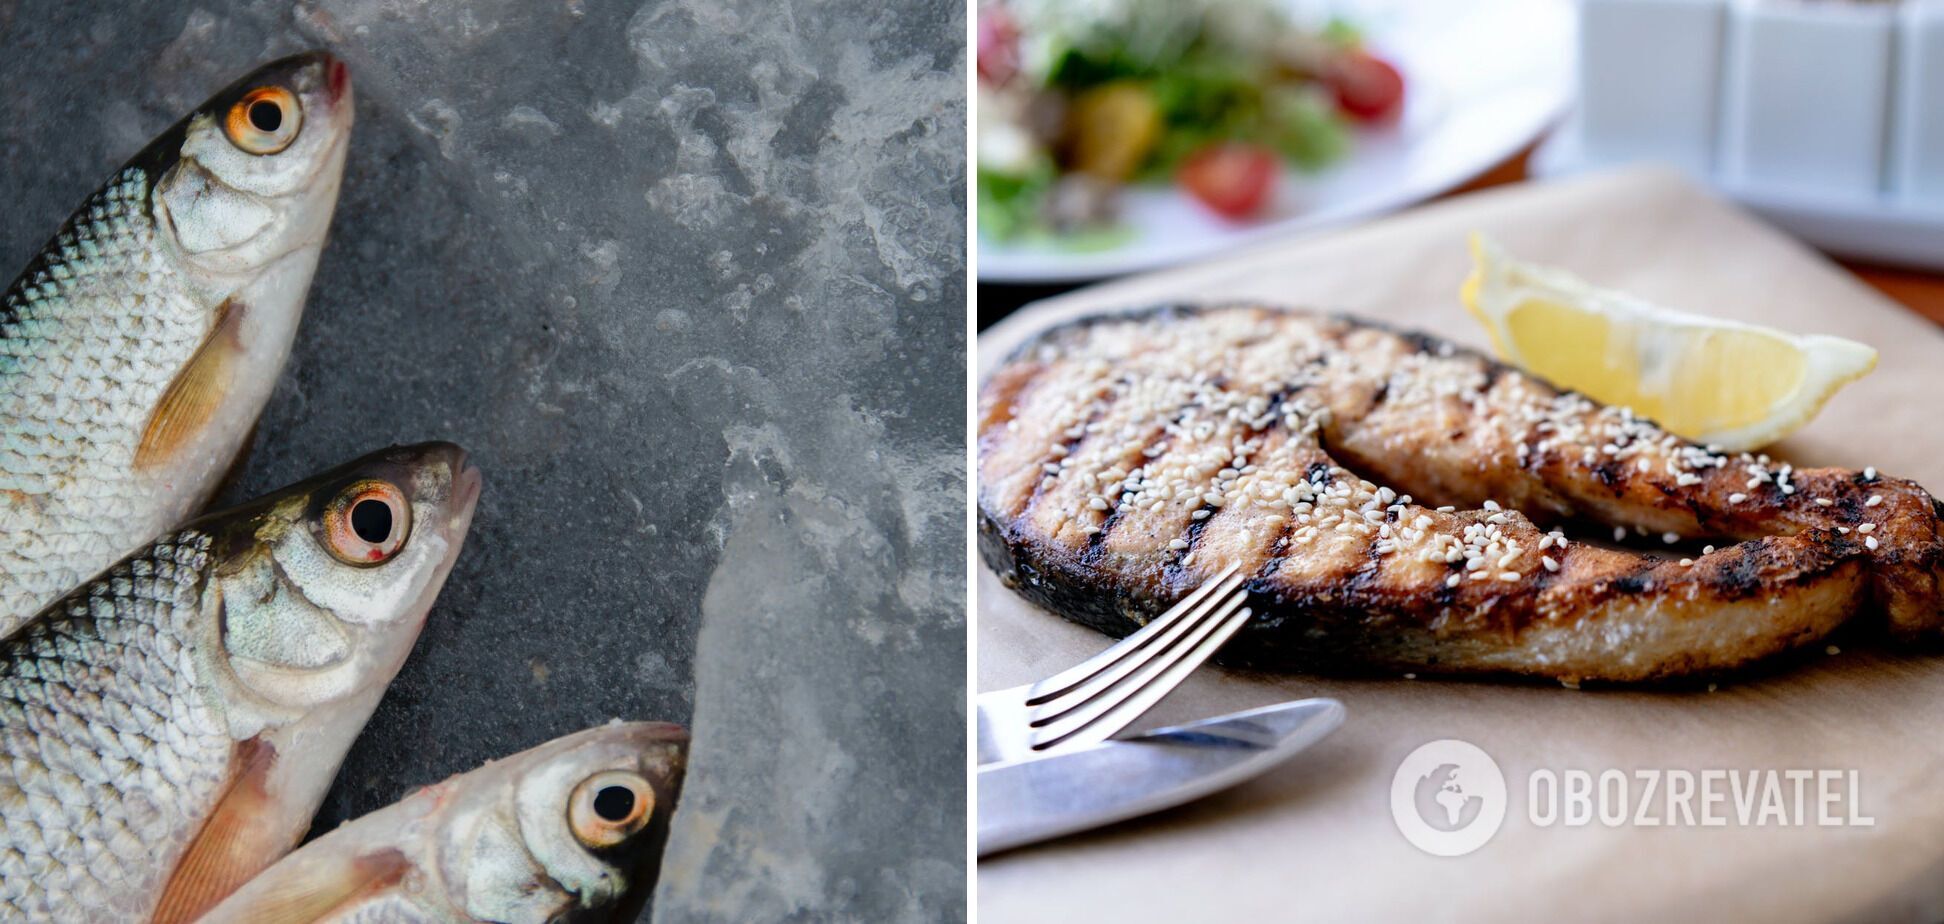 How to bake mackerel tasty and healthy